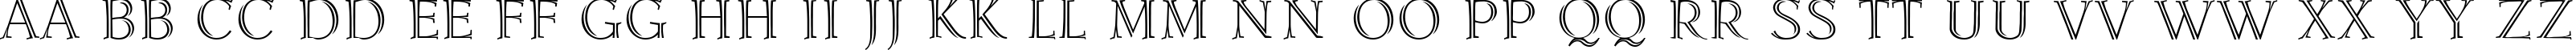 Пример написания английского алфавита шрифтом Lidia Medium